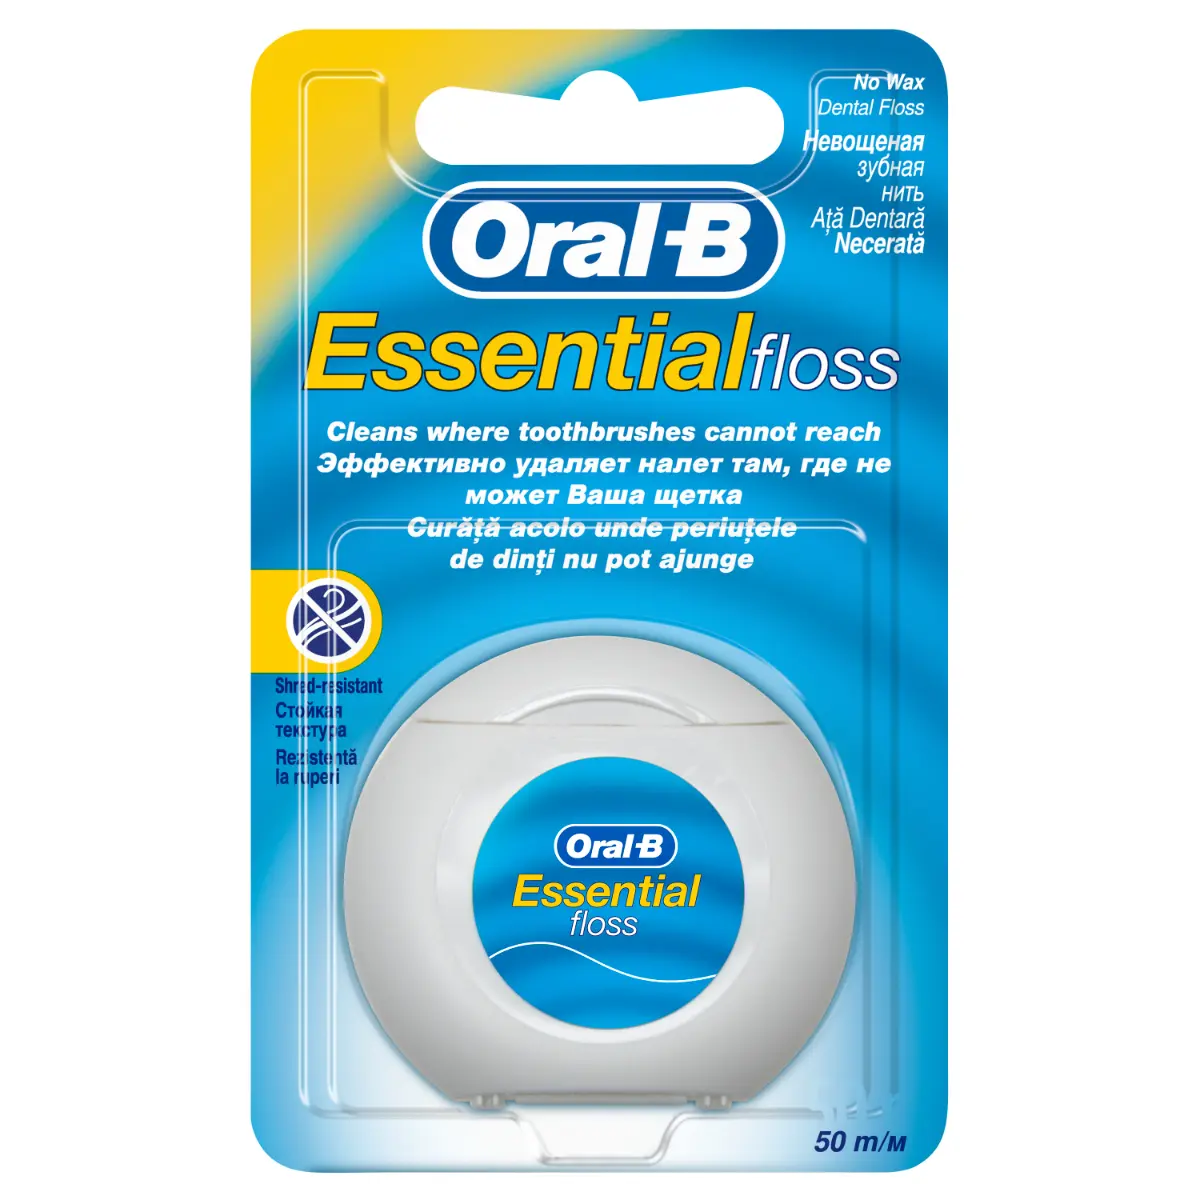 Ata dentara Oral-B Essential Floss 50m